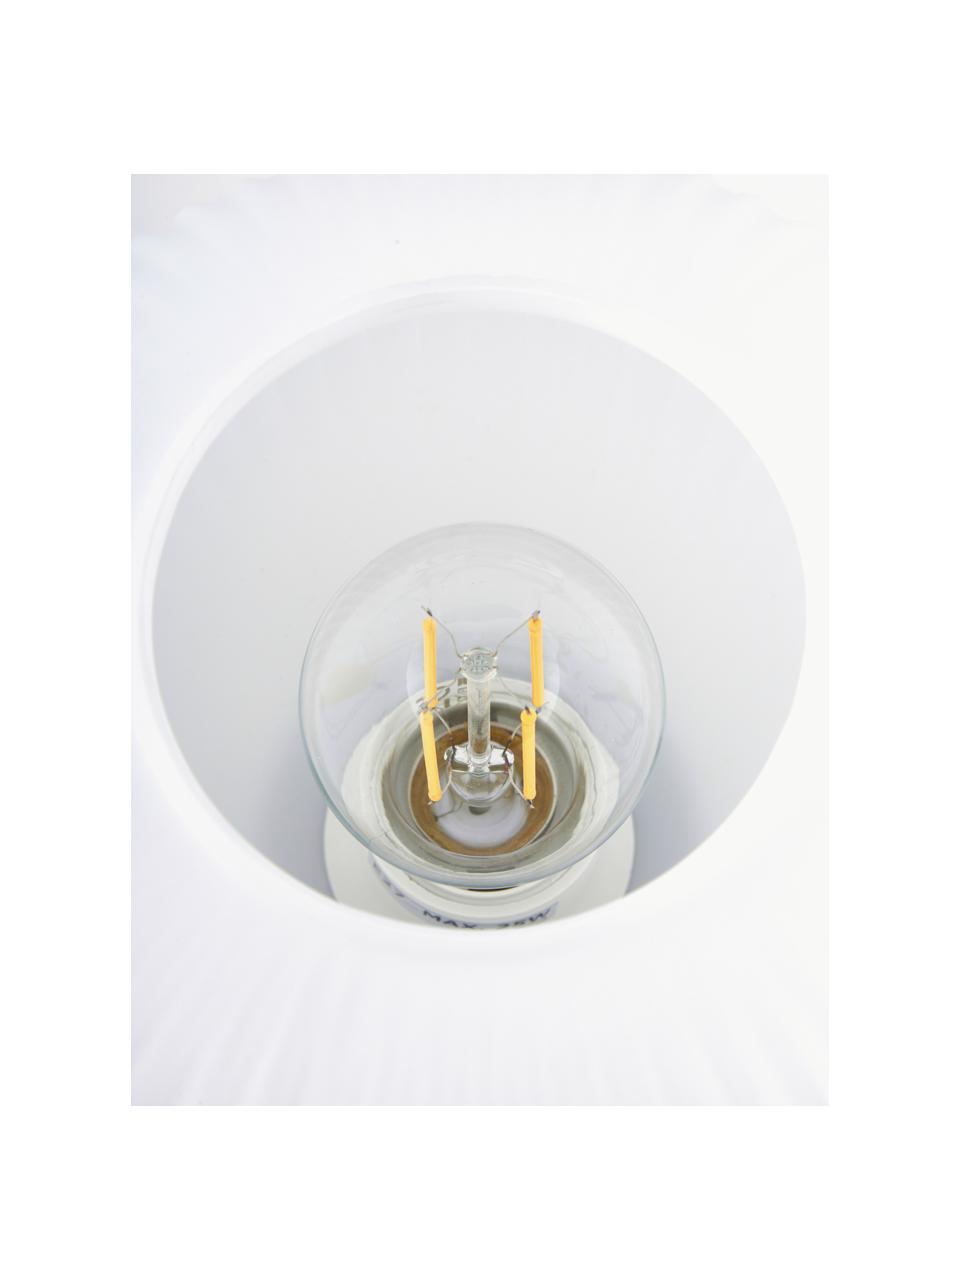 Kleine Tischlampe Charles aus Opalglas, Lampenschirm: Opalglas, Weiss, Schwarz, Ø 20 x H 20 cm